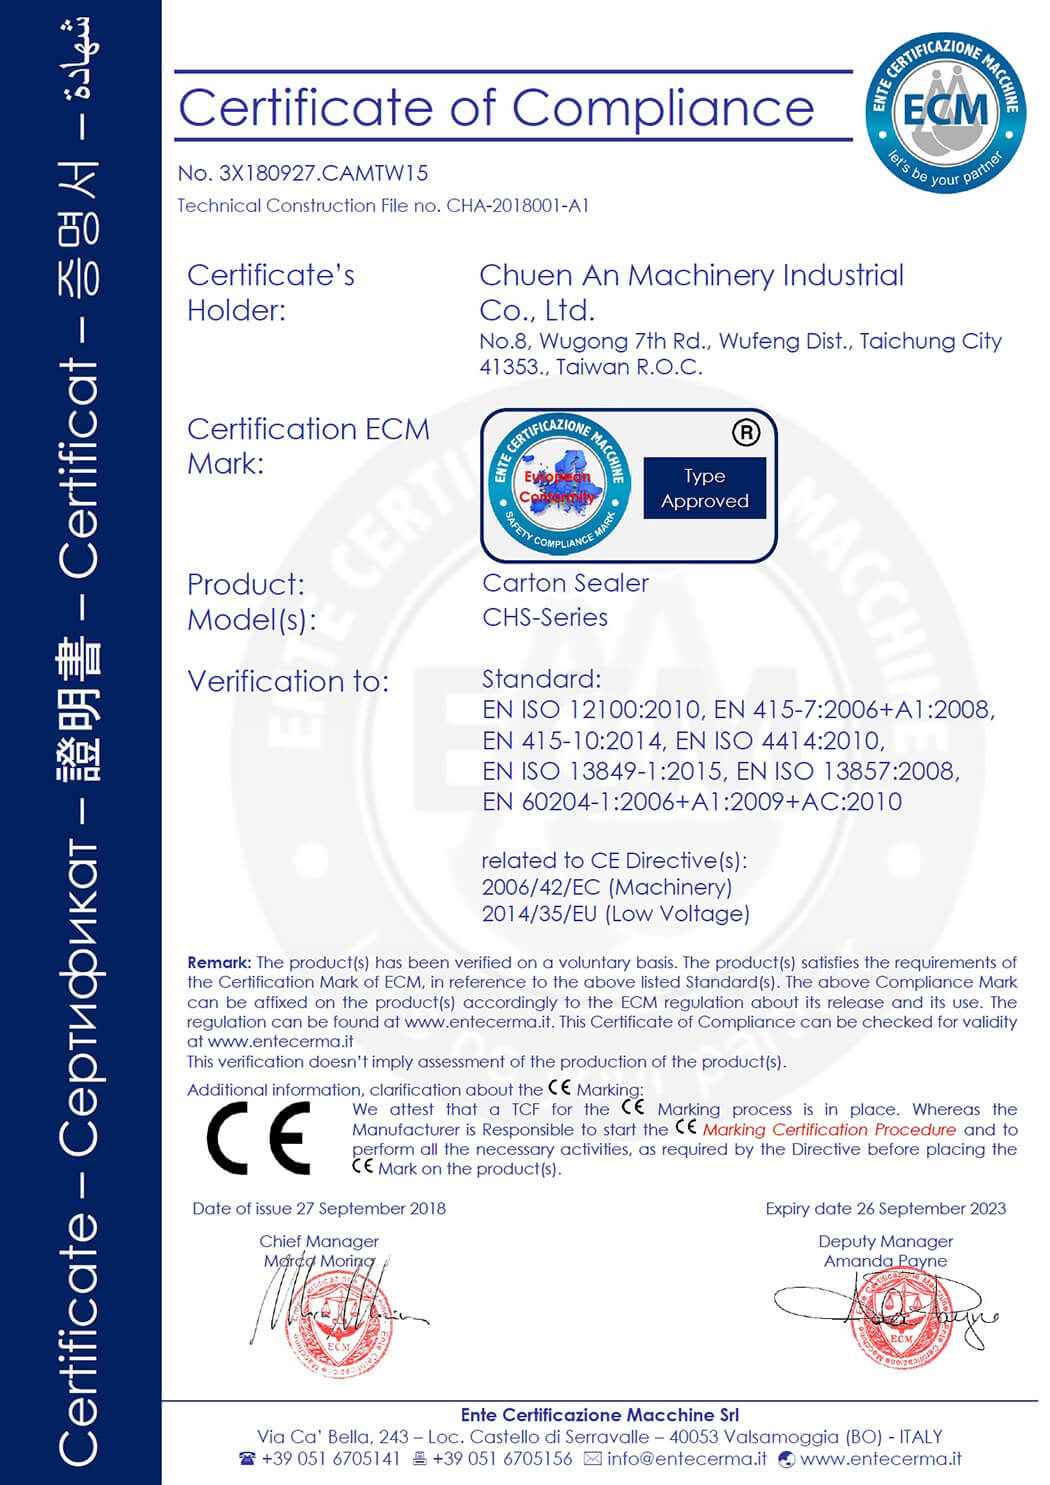 CE certificate